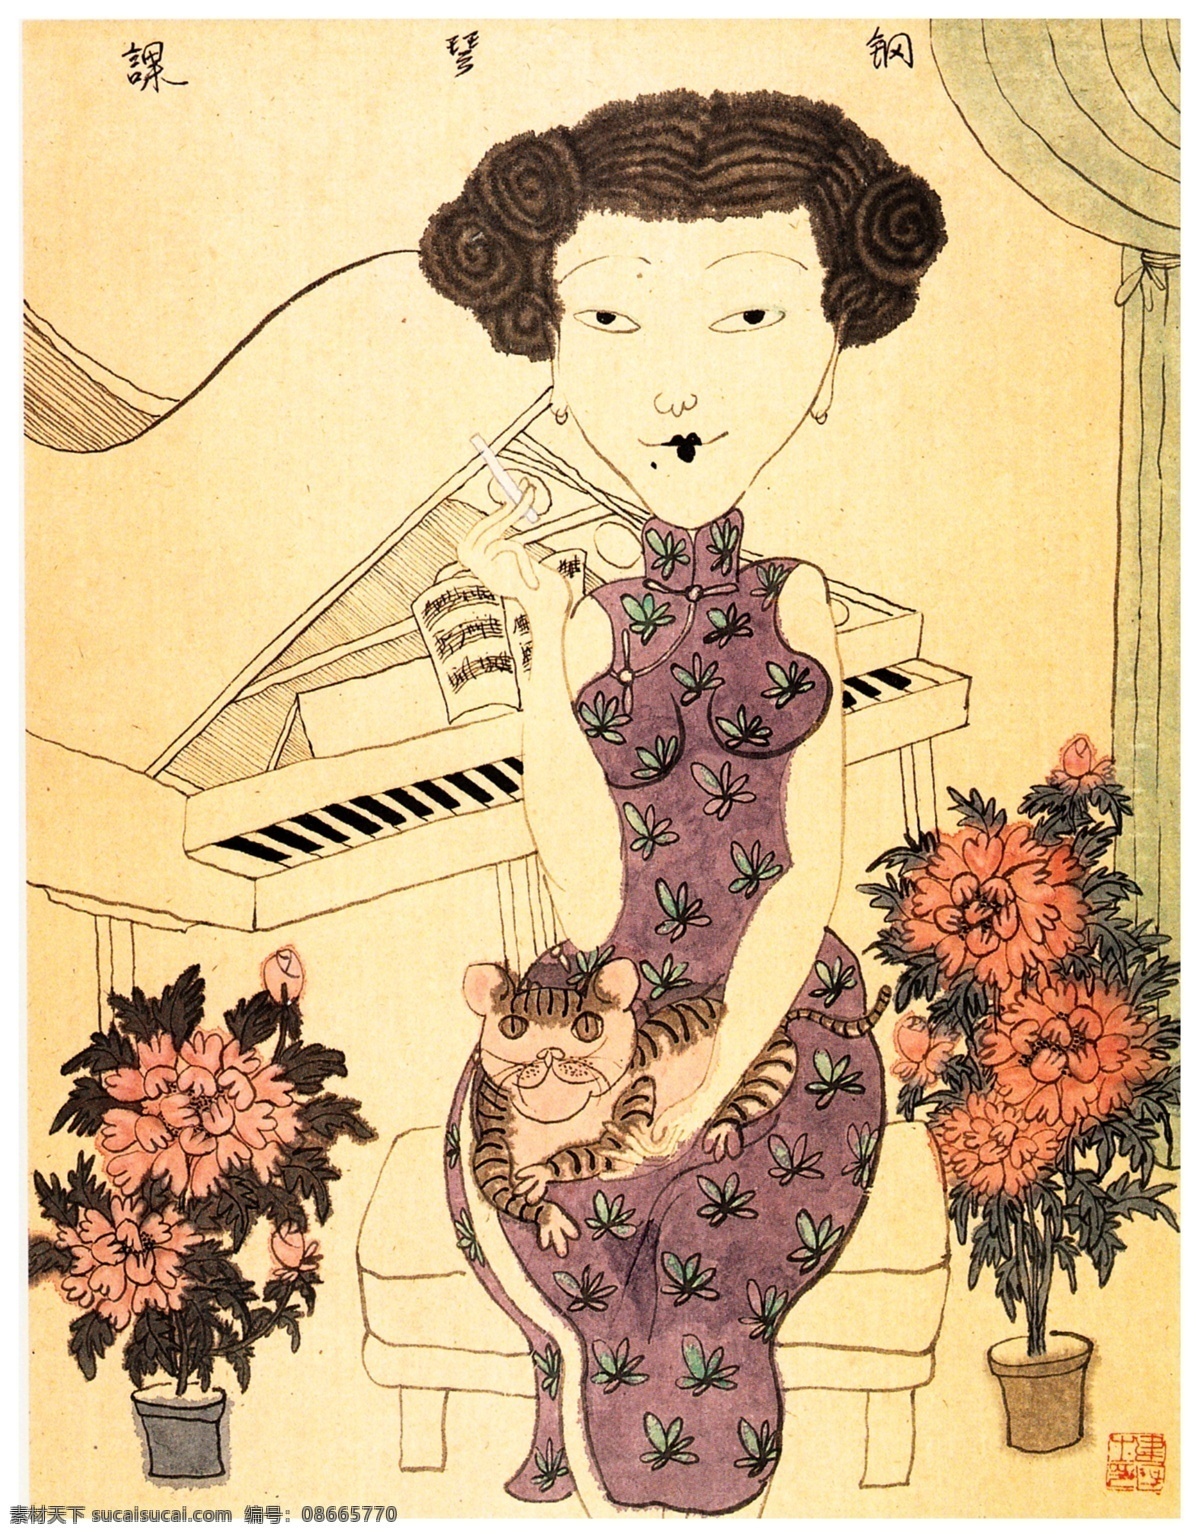 钢琴家 钢琴 弹钢琴 上海印象 上海女人 老上海 旗袍 魅力女人 女人肖像 身穿旗袍 装饰画 国画素材 人物装饰画 国画人物 绘画书法 文化艺术